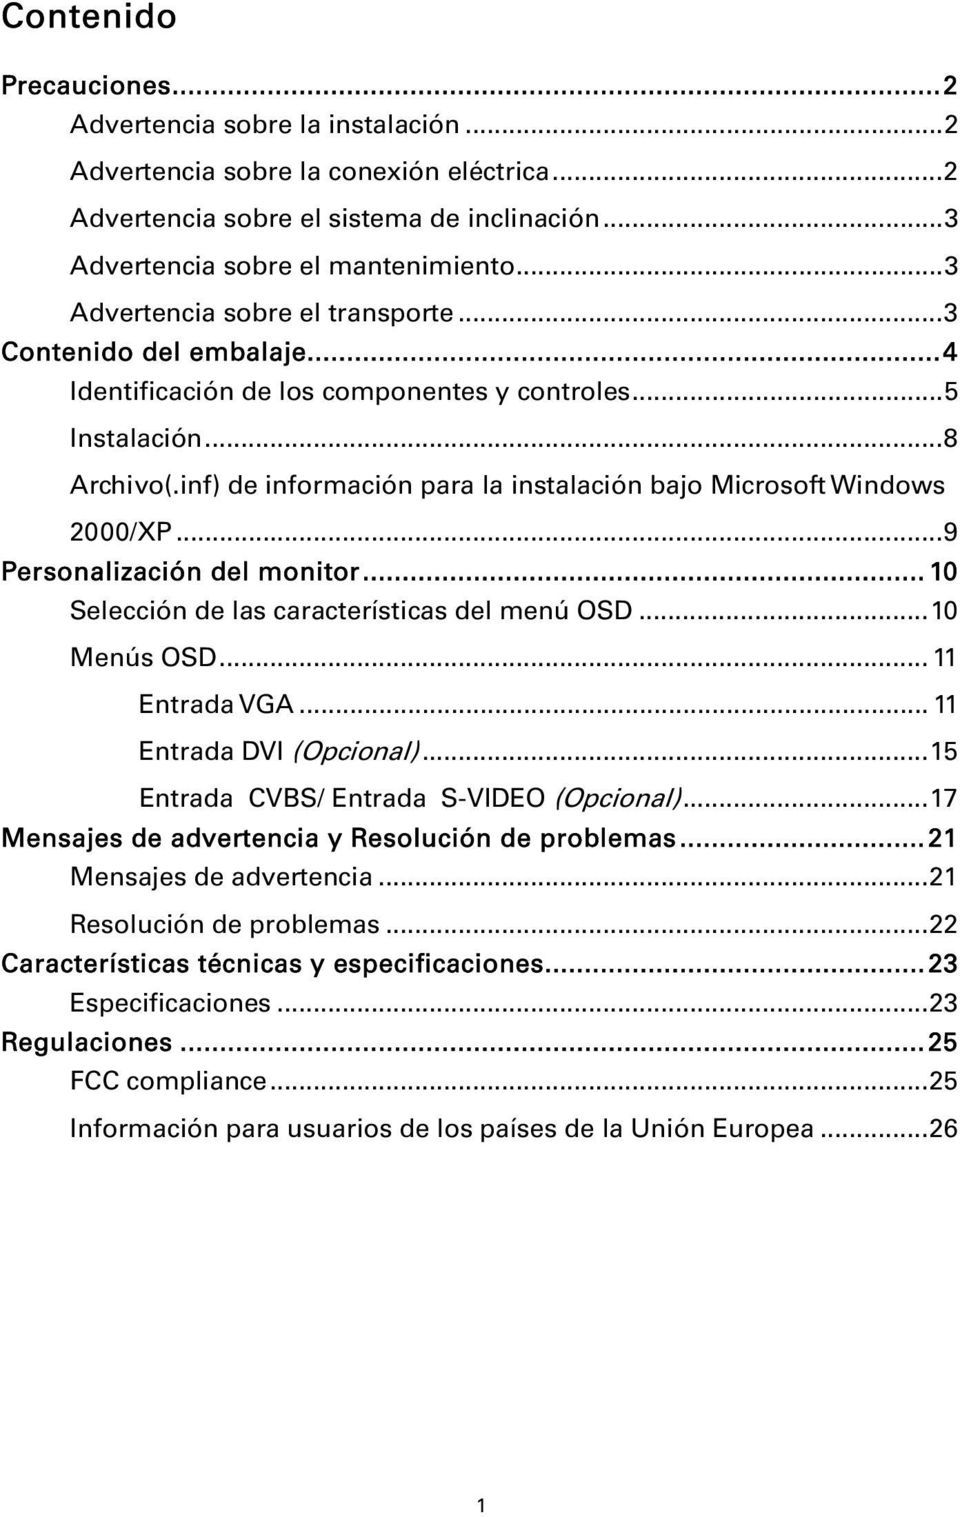 inf) de información para la instalación bajo Microsoft Windows 2000/XP...9 Personalización del monitor... 10 Selección de las características del menú OSD...10 Menús OSD... 11 Entrada VGA.